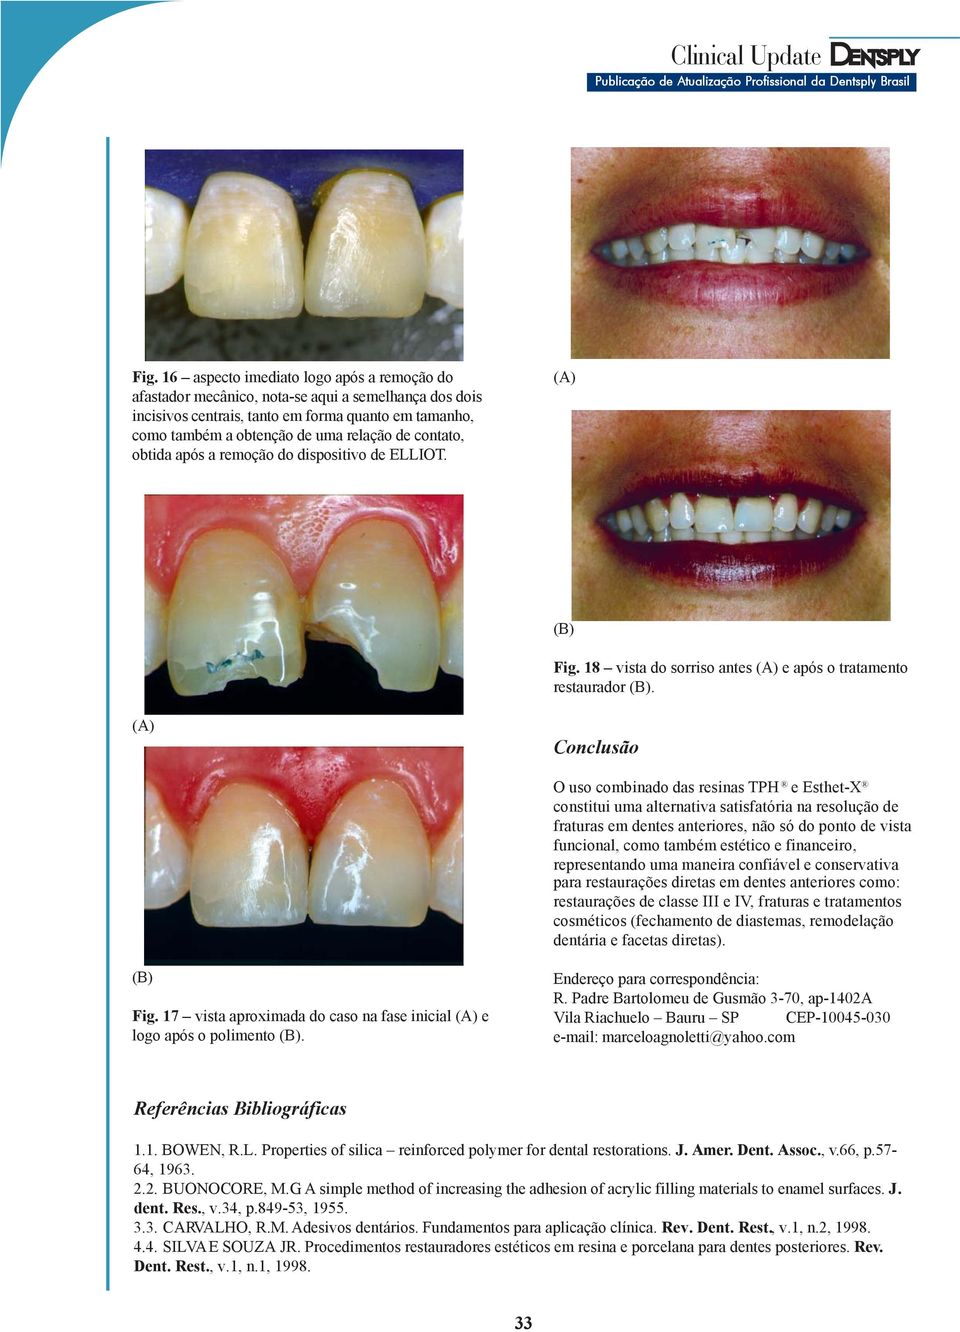 Conclusão O uso combinado das resinas TPH e Esthet-X constitui uma alternativa satisfatória na resolução de fraturas em dentes anteriores, não só do ponto de vista funcional, como também estético e